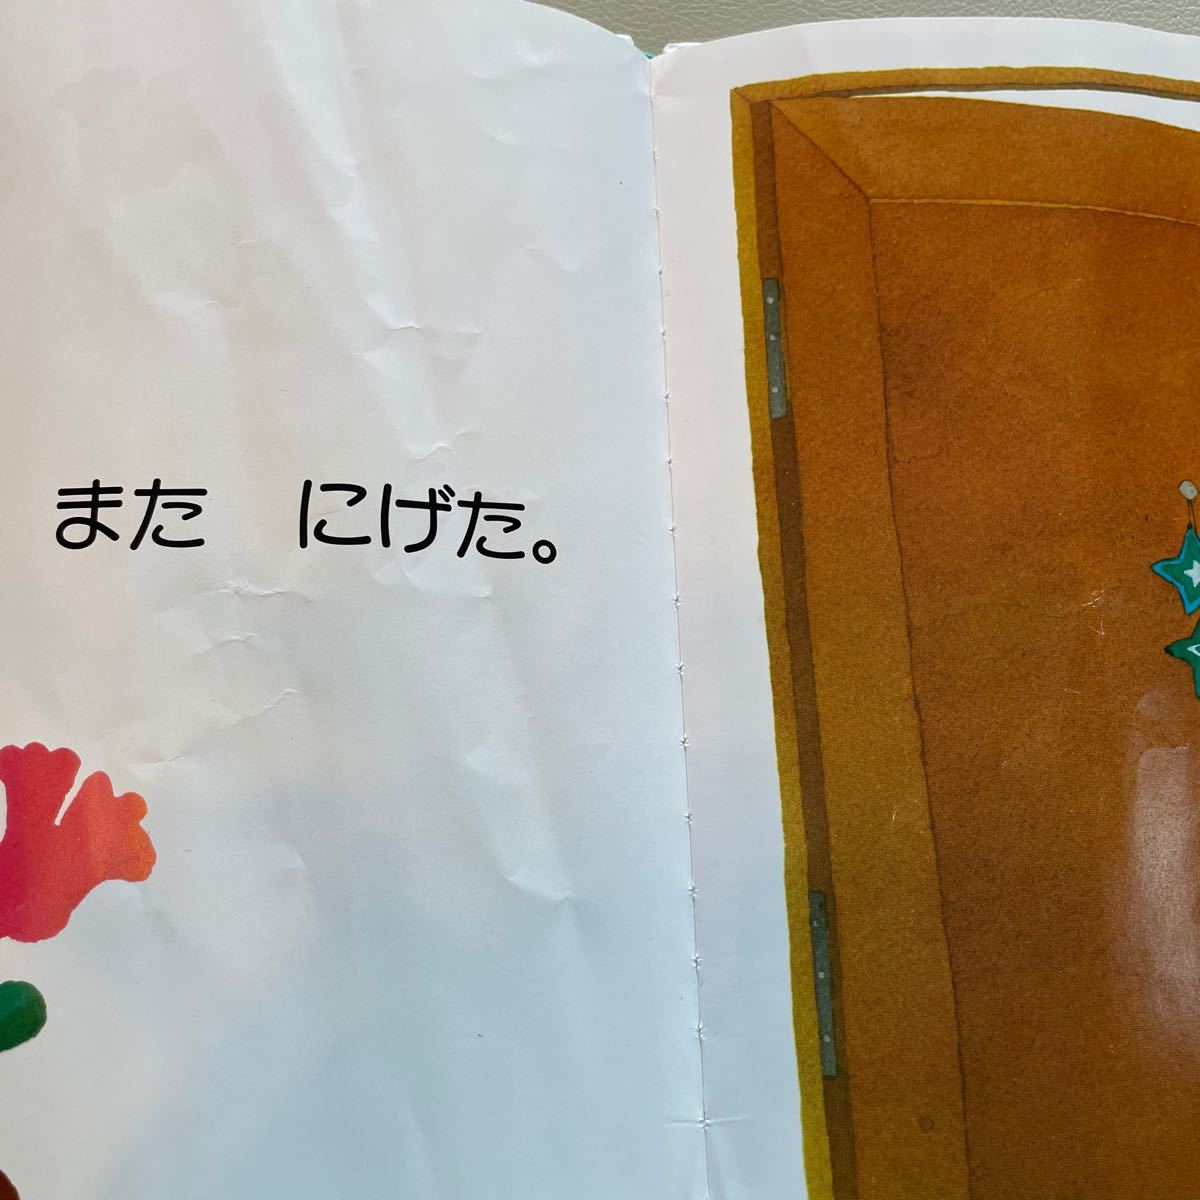 きんぎょがにげた 五味太郎 絵本